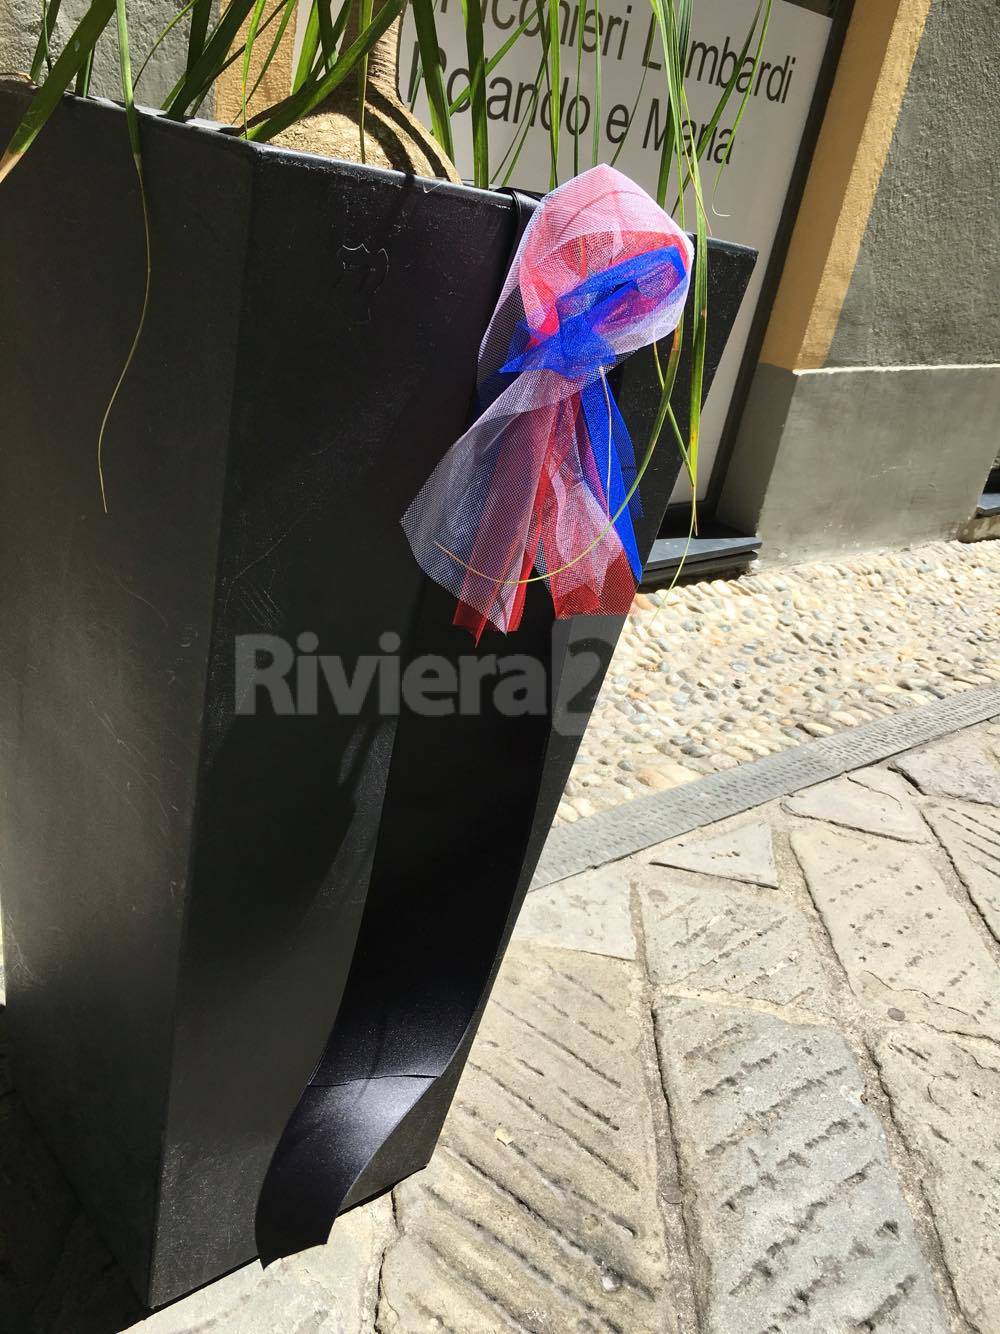 Riviera24 – Commercianti di via Cavour, coccarde con la bandiera francese